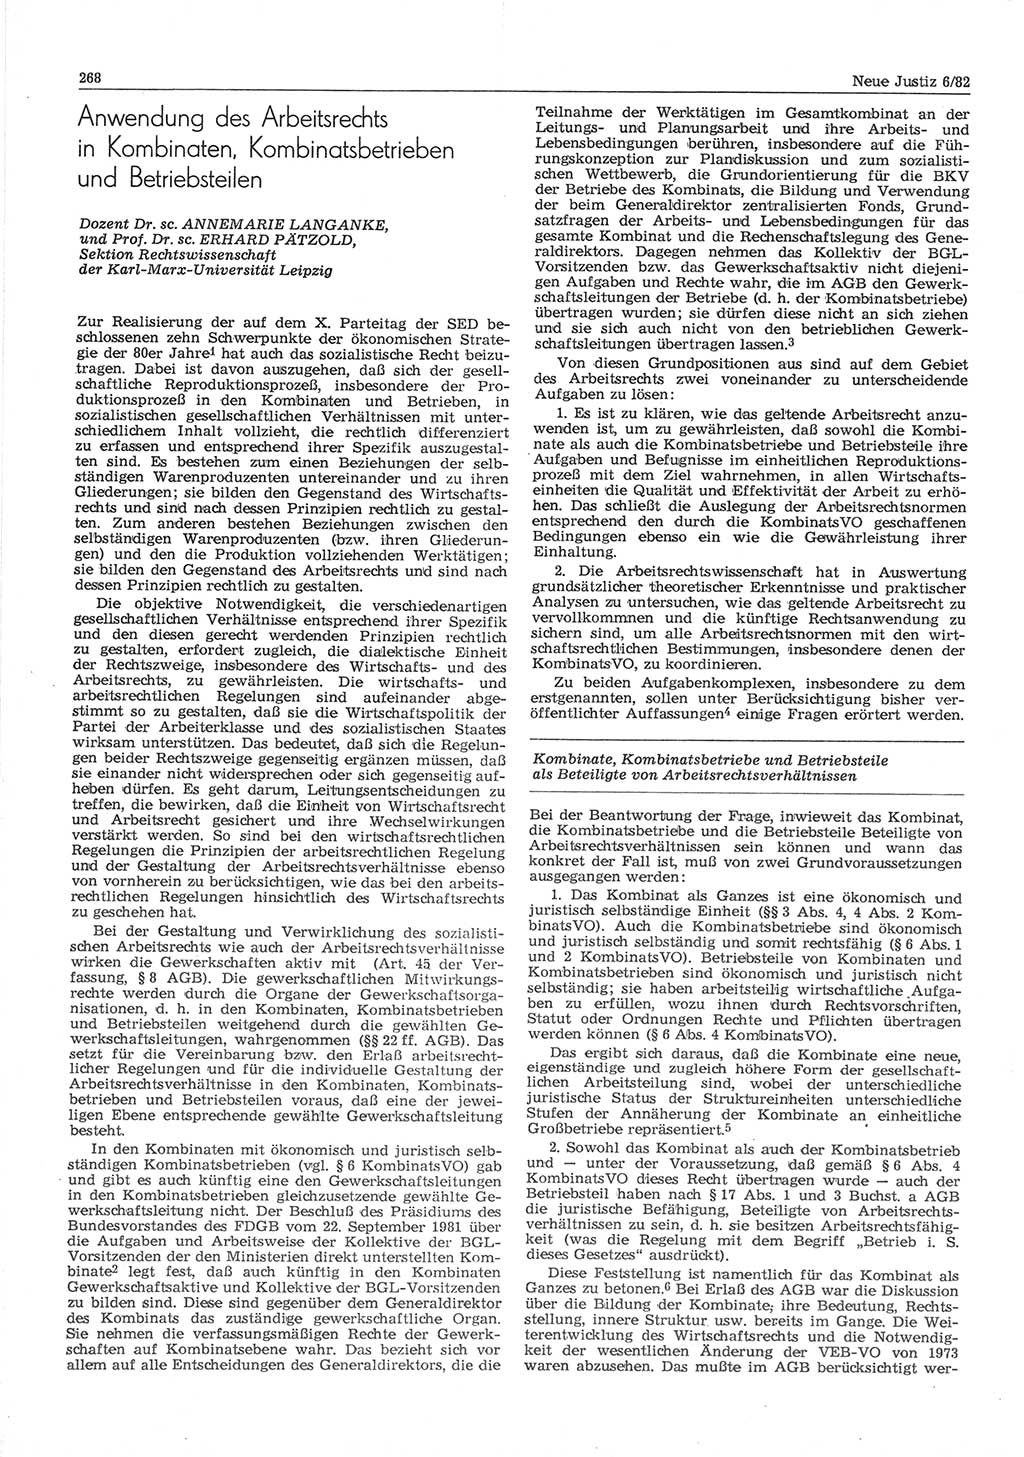 Neue Justiz (NJ), Zeitschrift für sozialistisches Recht und Gesetzlichkeit [Deutsche Demokratische Republik (DDR)], 36. Jahrgang 1982, Seite 268 (NJ DDR 1982, S. 268)